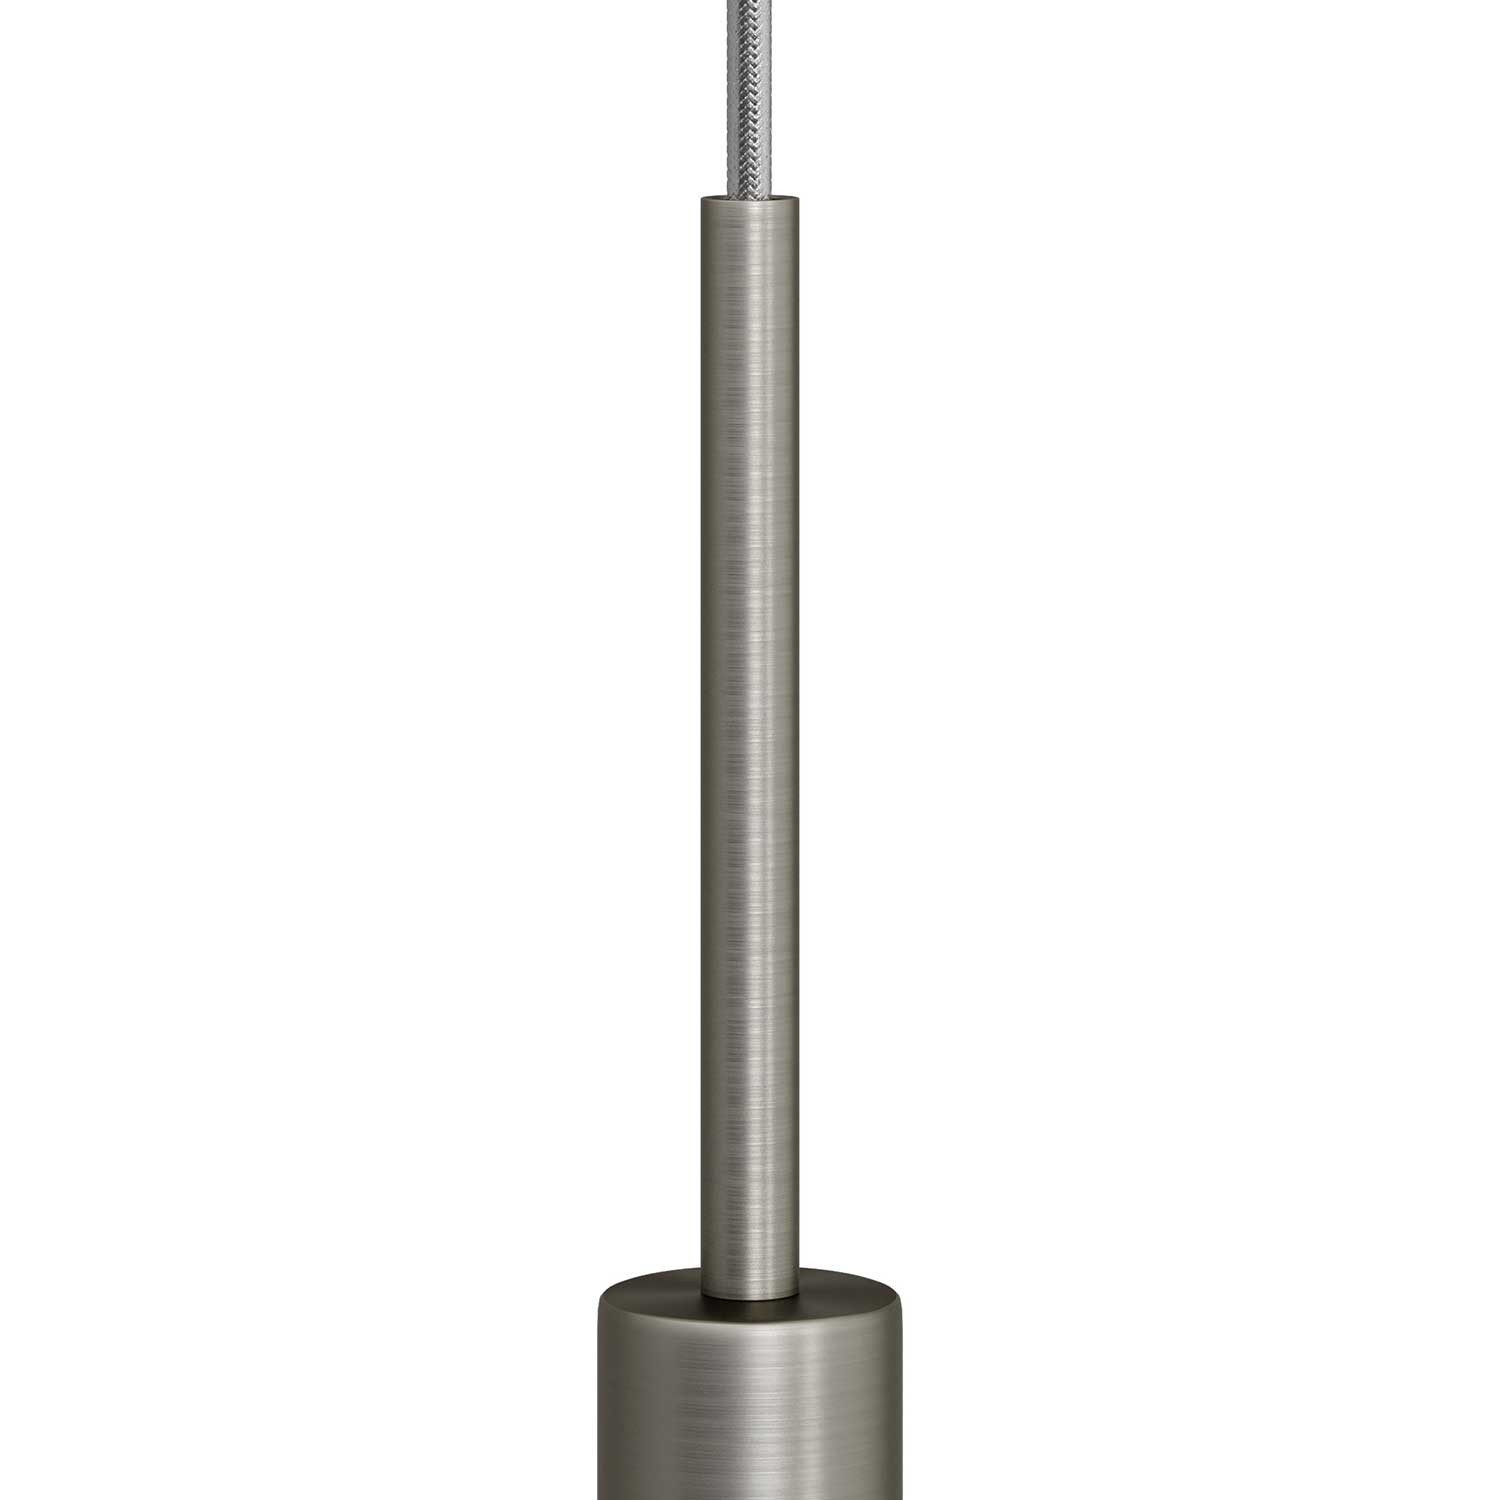 Serracavo cilindrico in metallo lunghezza 15 cm completo di tige, dado e rondella